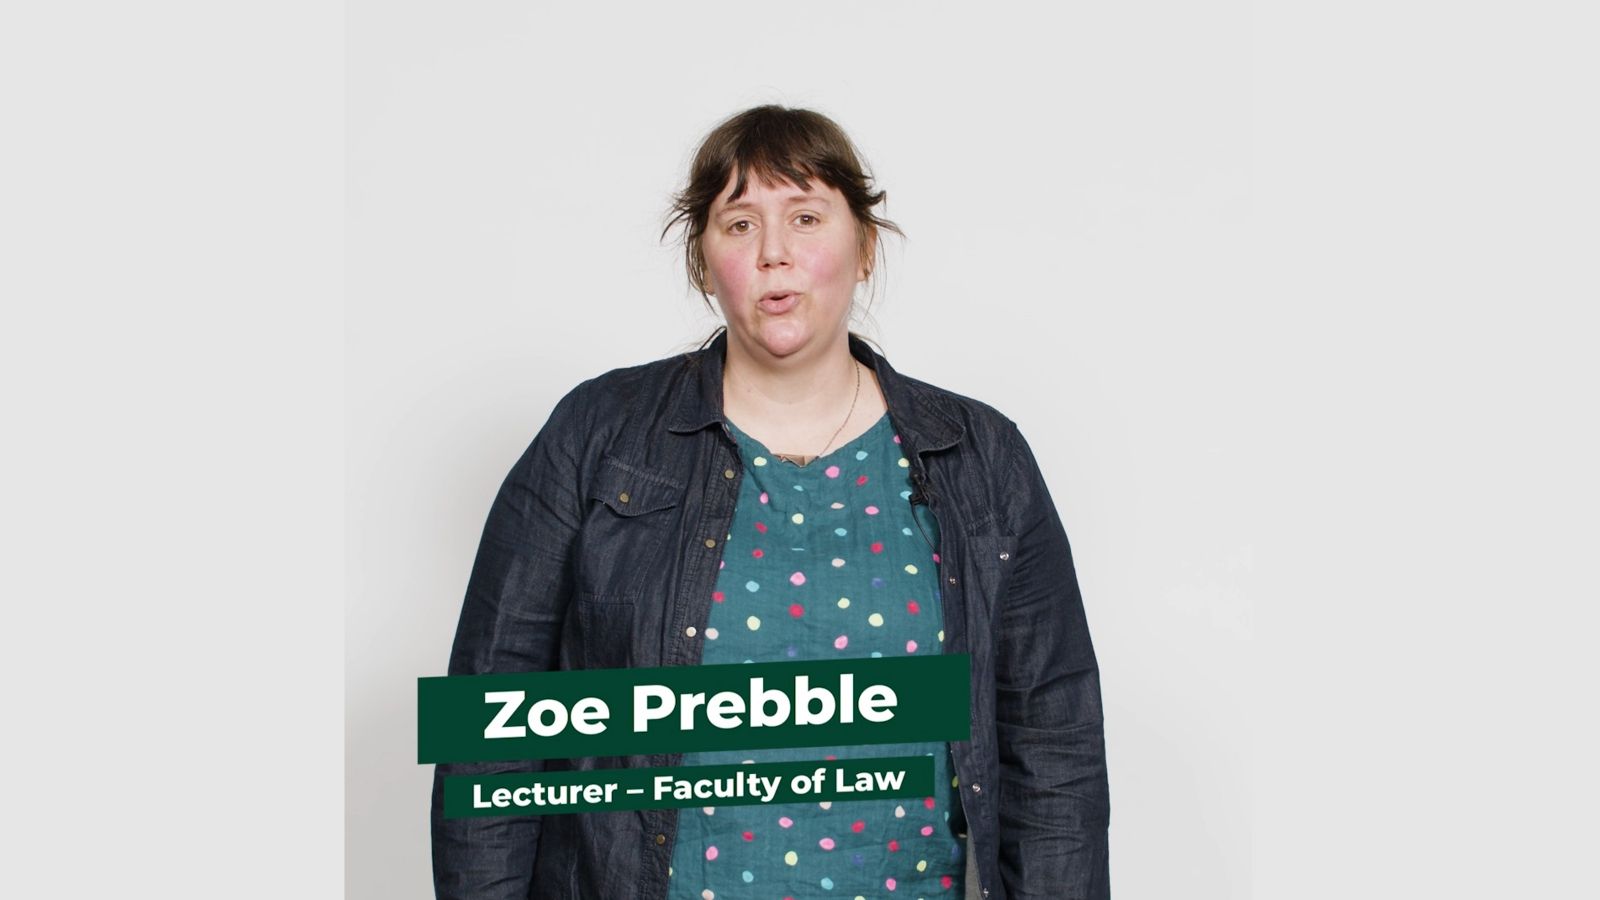 Dr Zoe Prebble